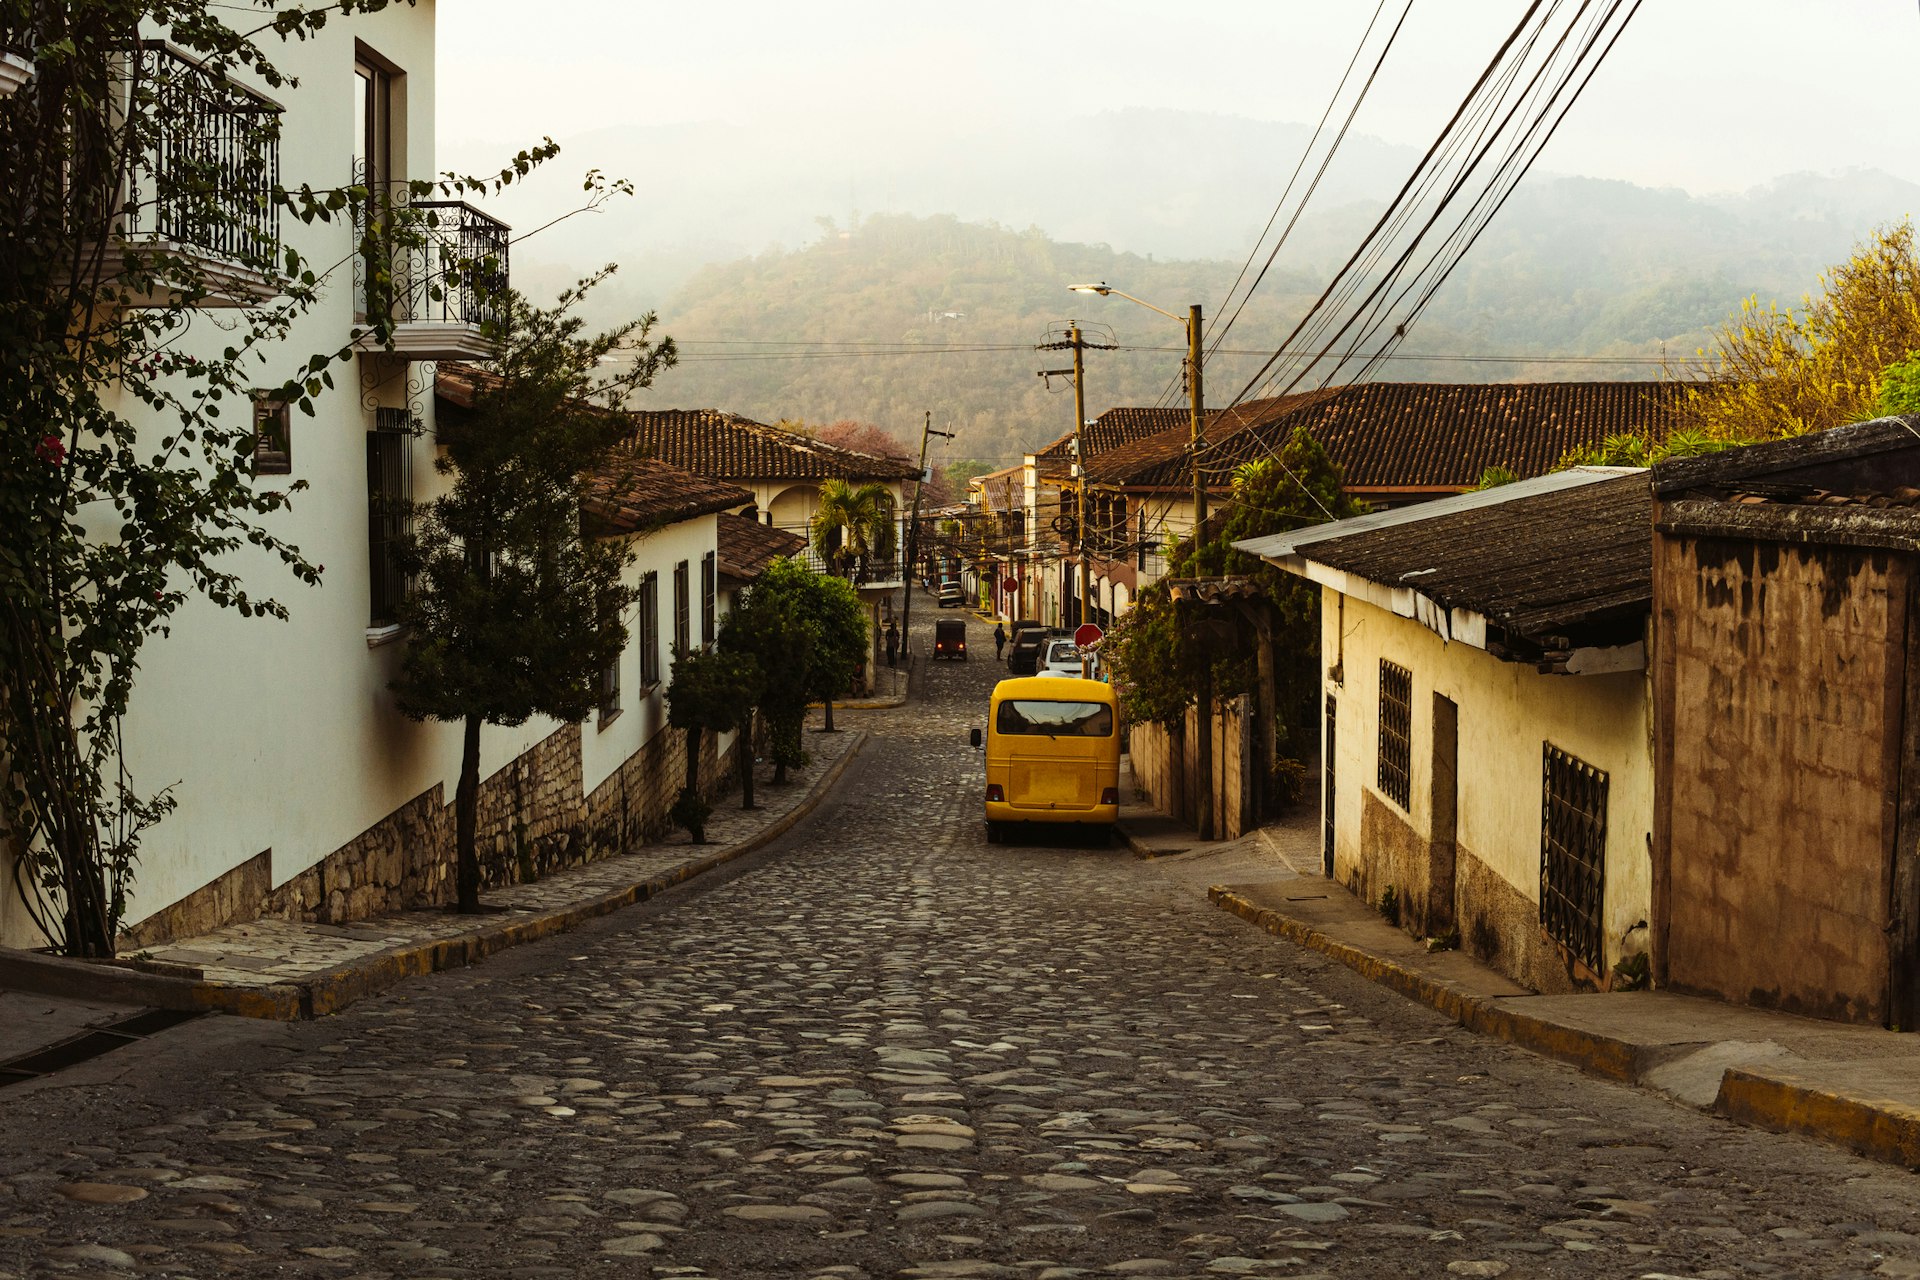 Mirador Avenue in the municipality of Copán Ruinas, Honduras